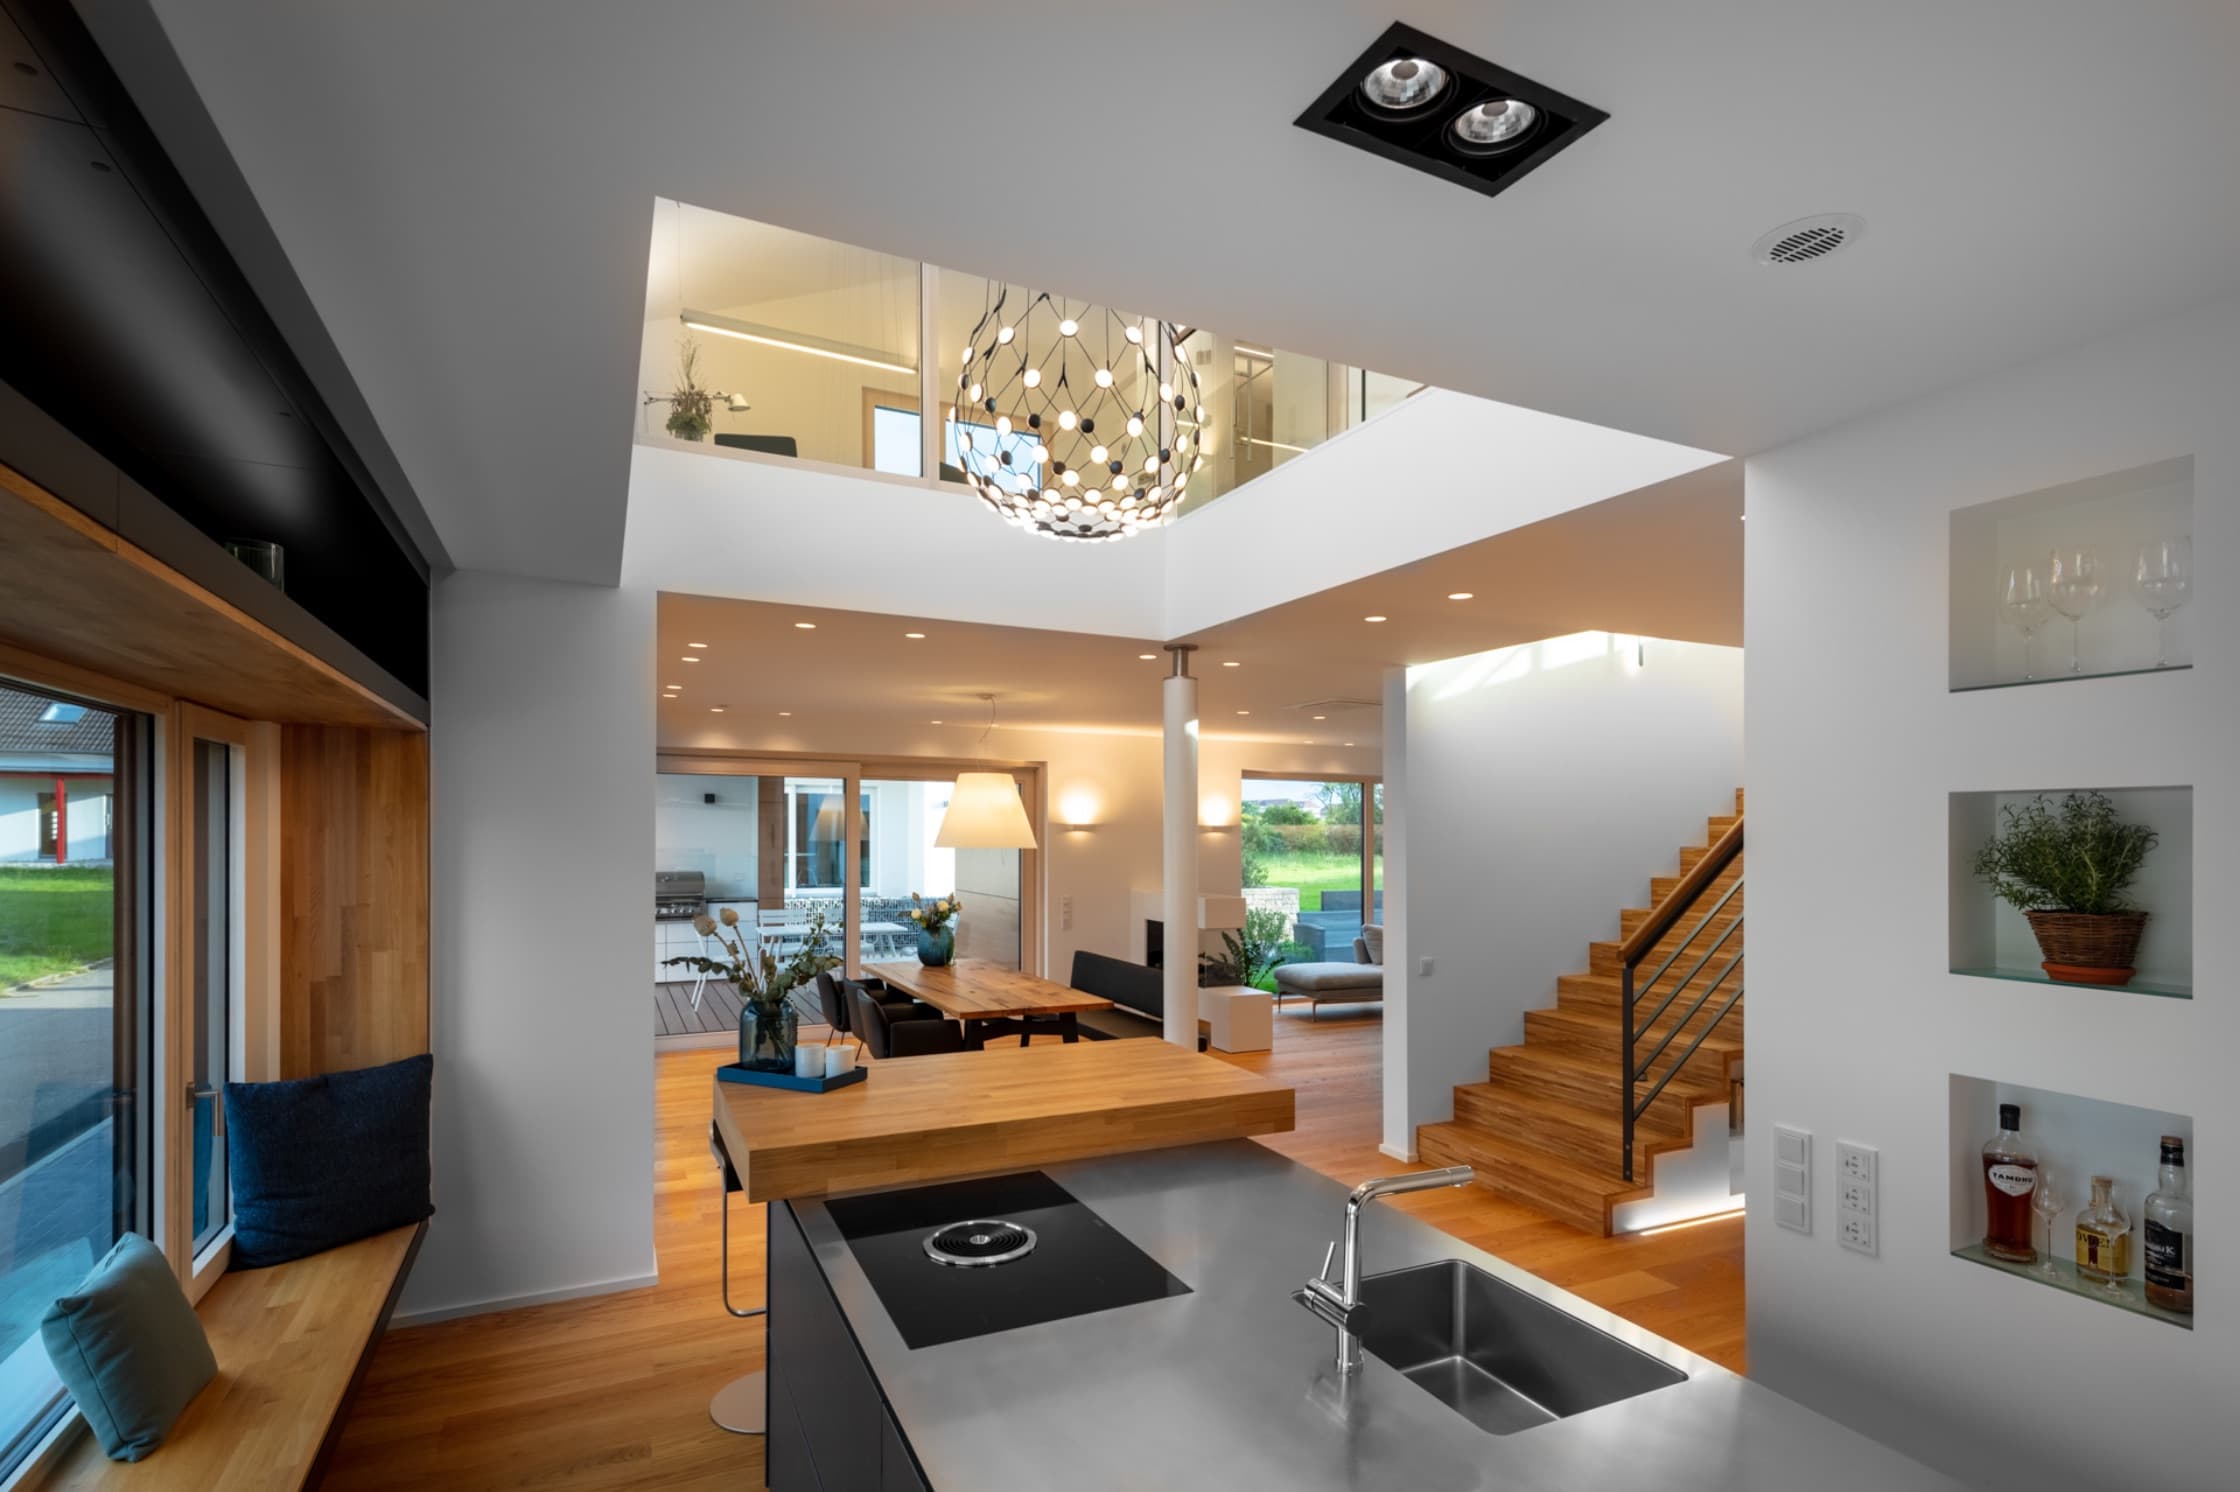 Offene Küche und maßgefertigte Möbel – Interior Design mit Konzept